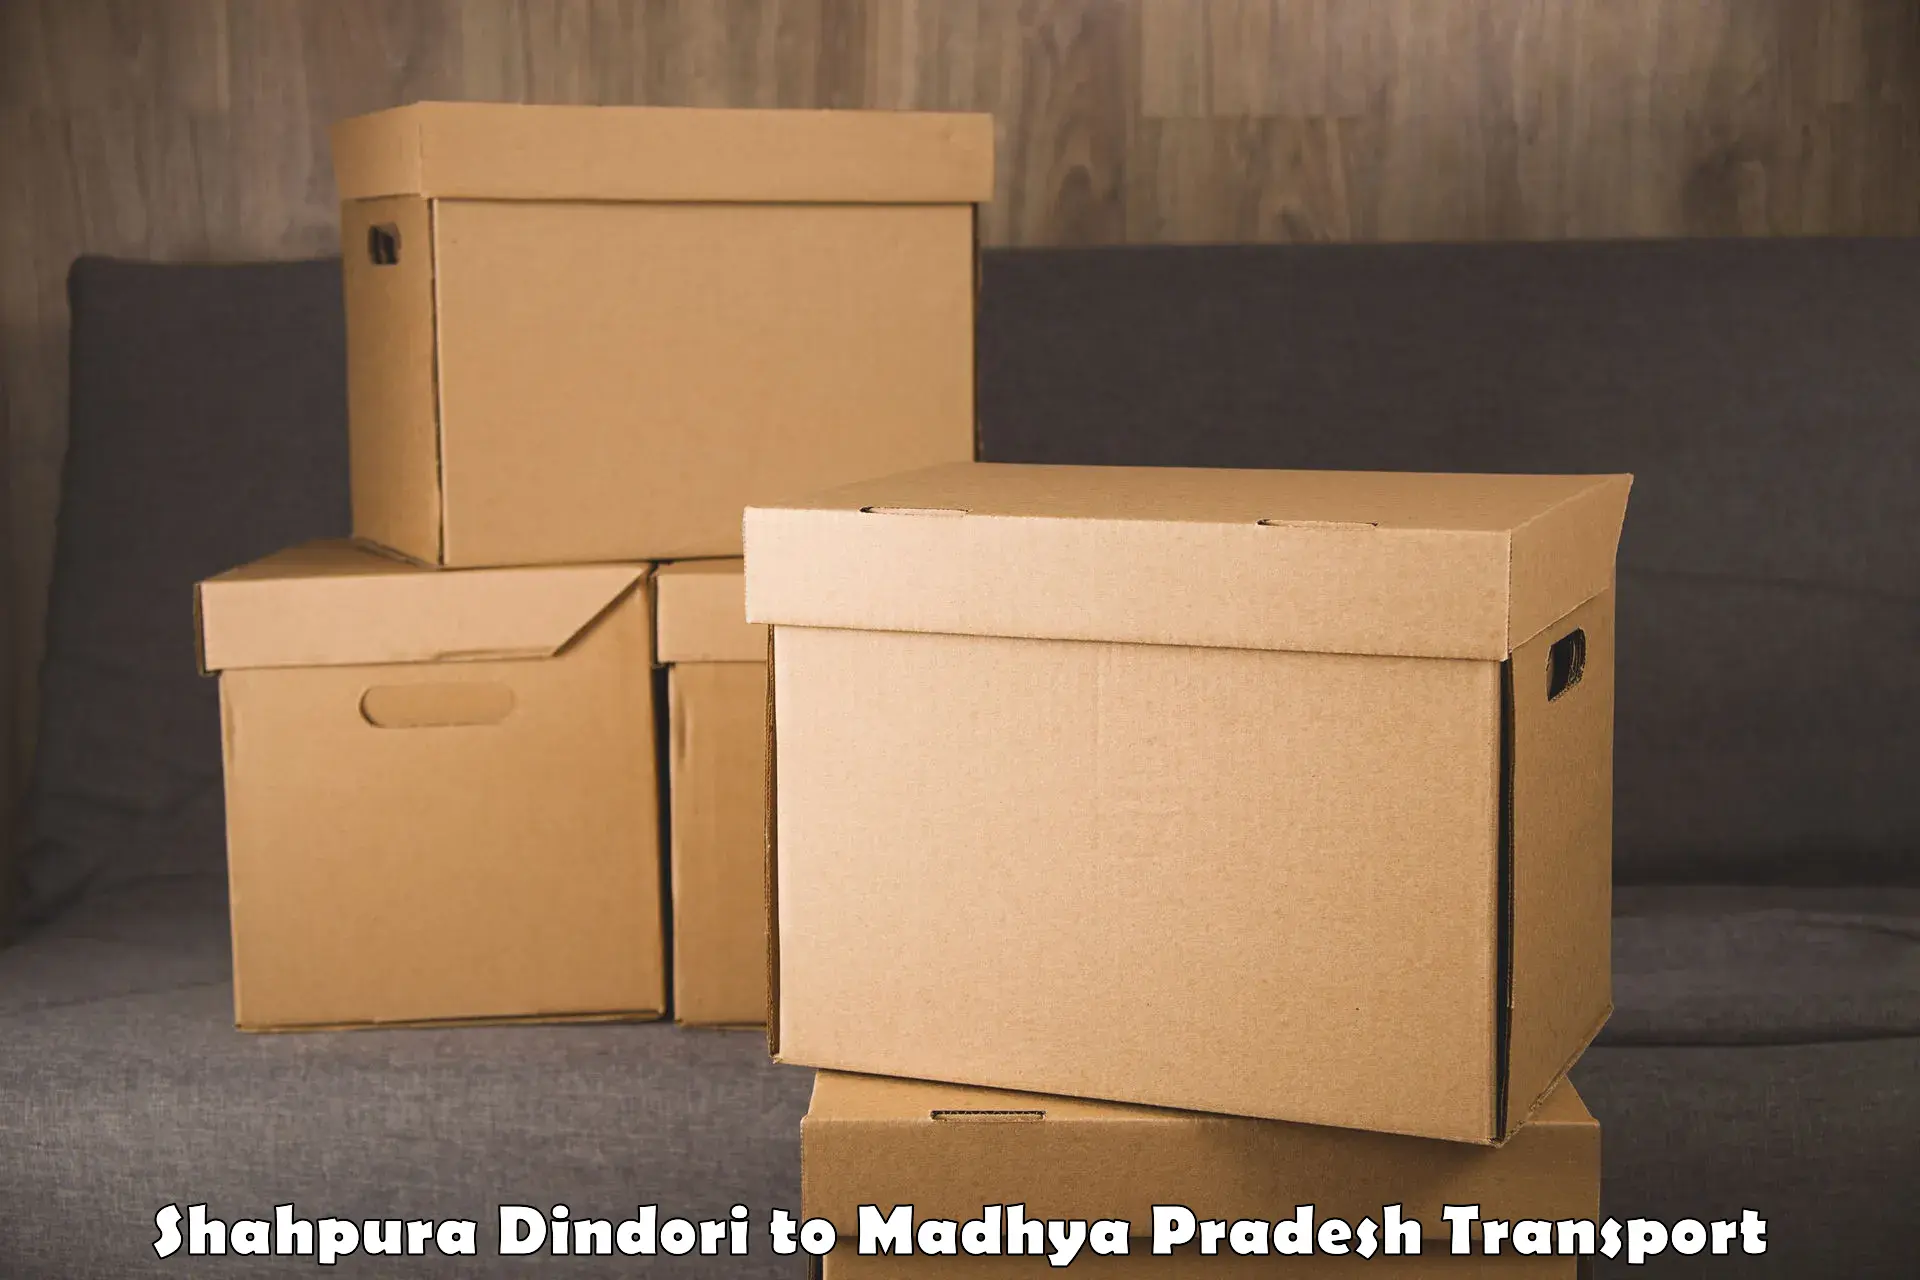 Luggage transport services Shahpura Dindori to Maheshwar